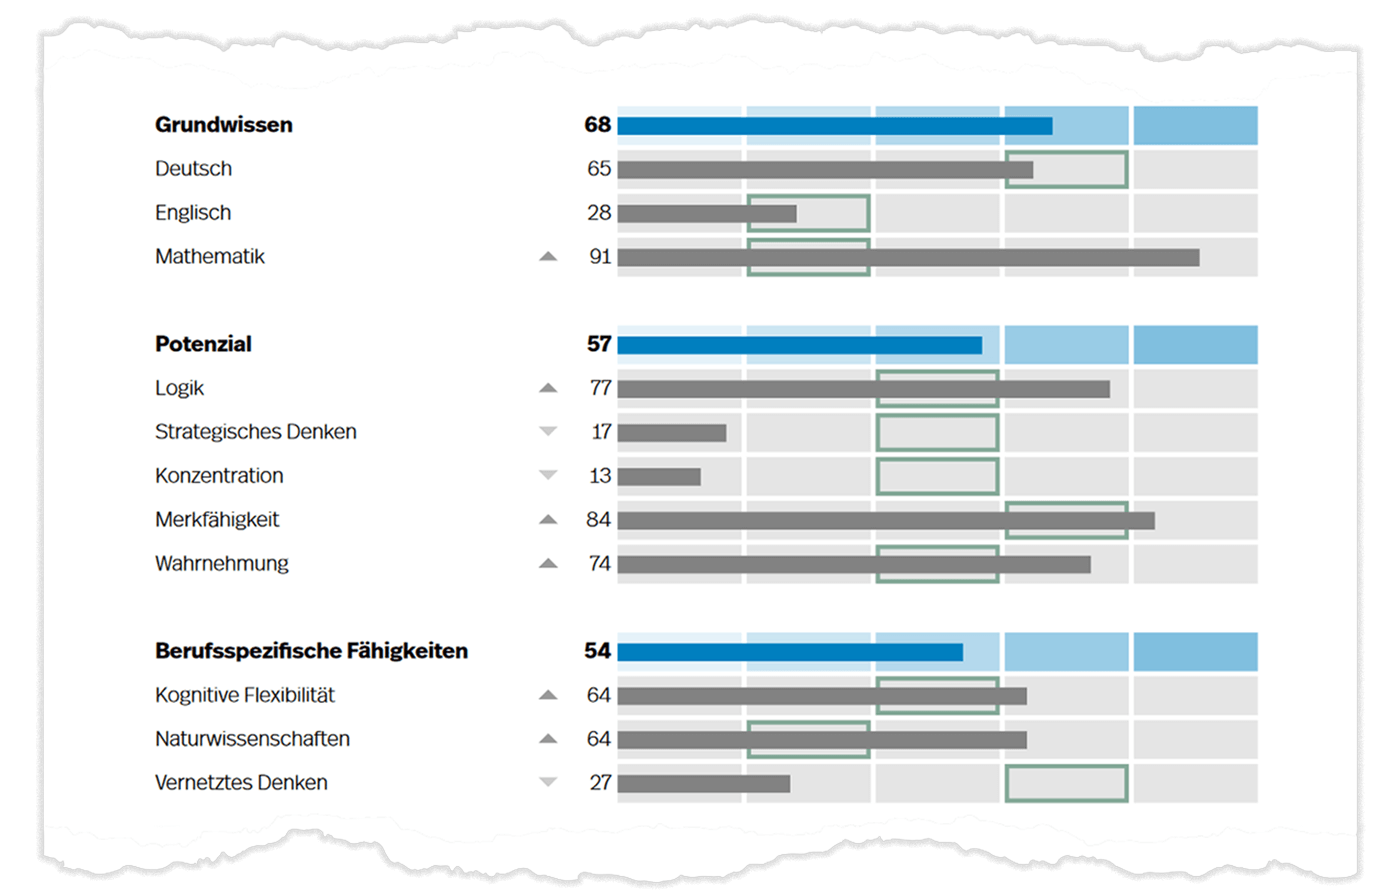 Prozentrangwerte für das Grundwissen, Potenzial und die Berufsspezifischen Fähigkeiten (blau) und deren Gebiete (grau) auf Seite 1 der Auswertung